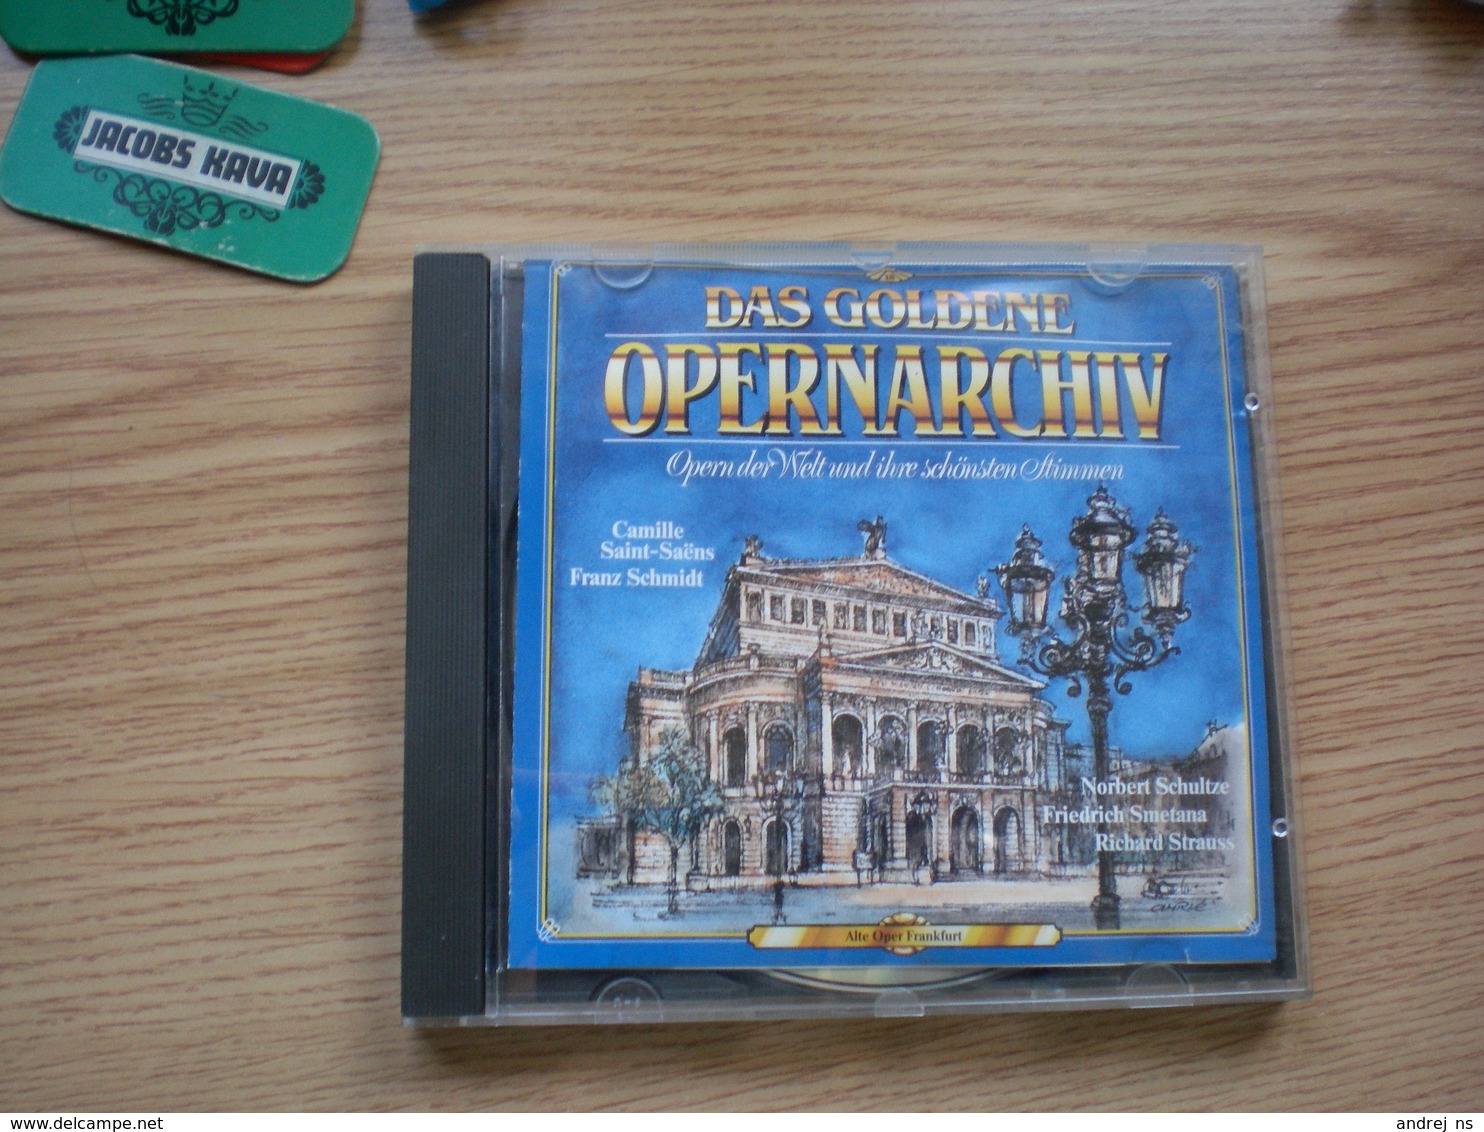 Das Goldene Opernarchiv - Opere